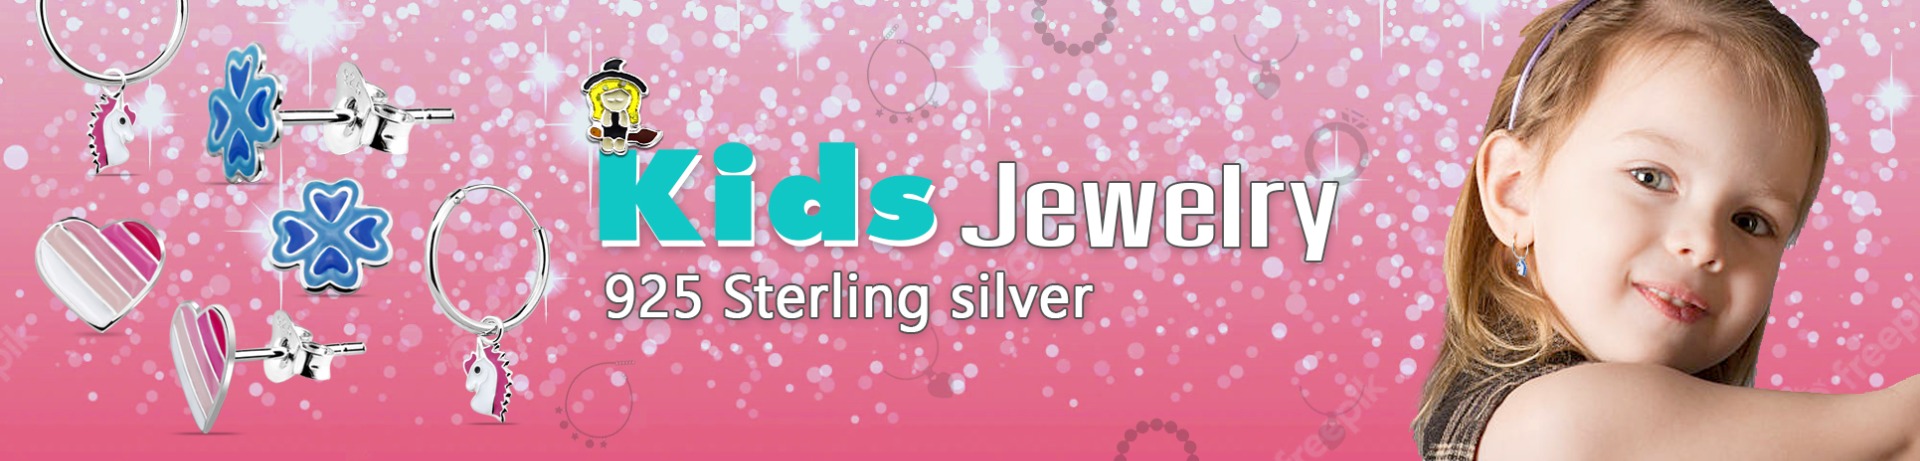 wholesale kids jewelry safasilver.com